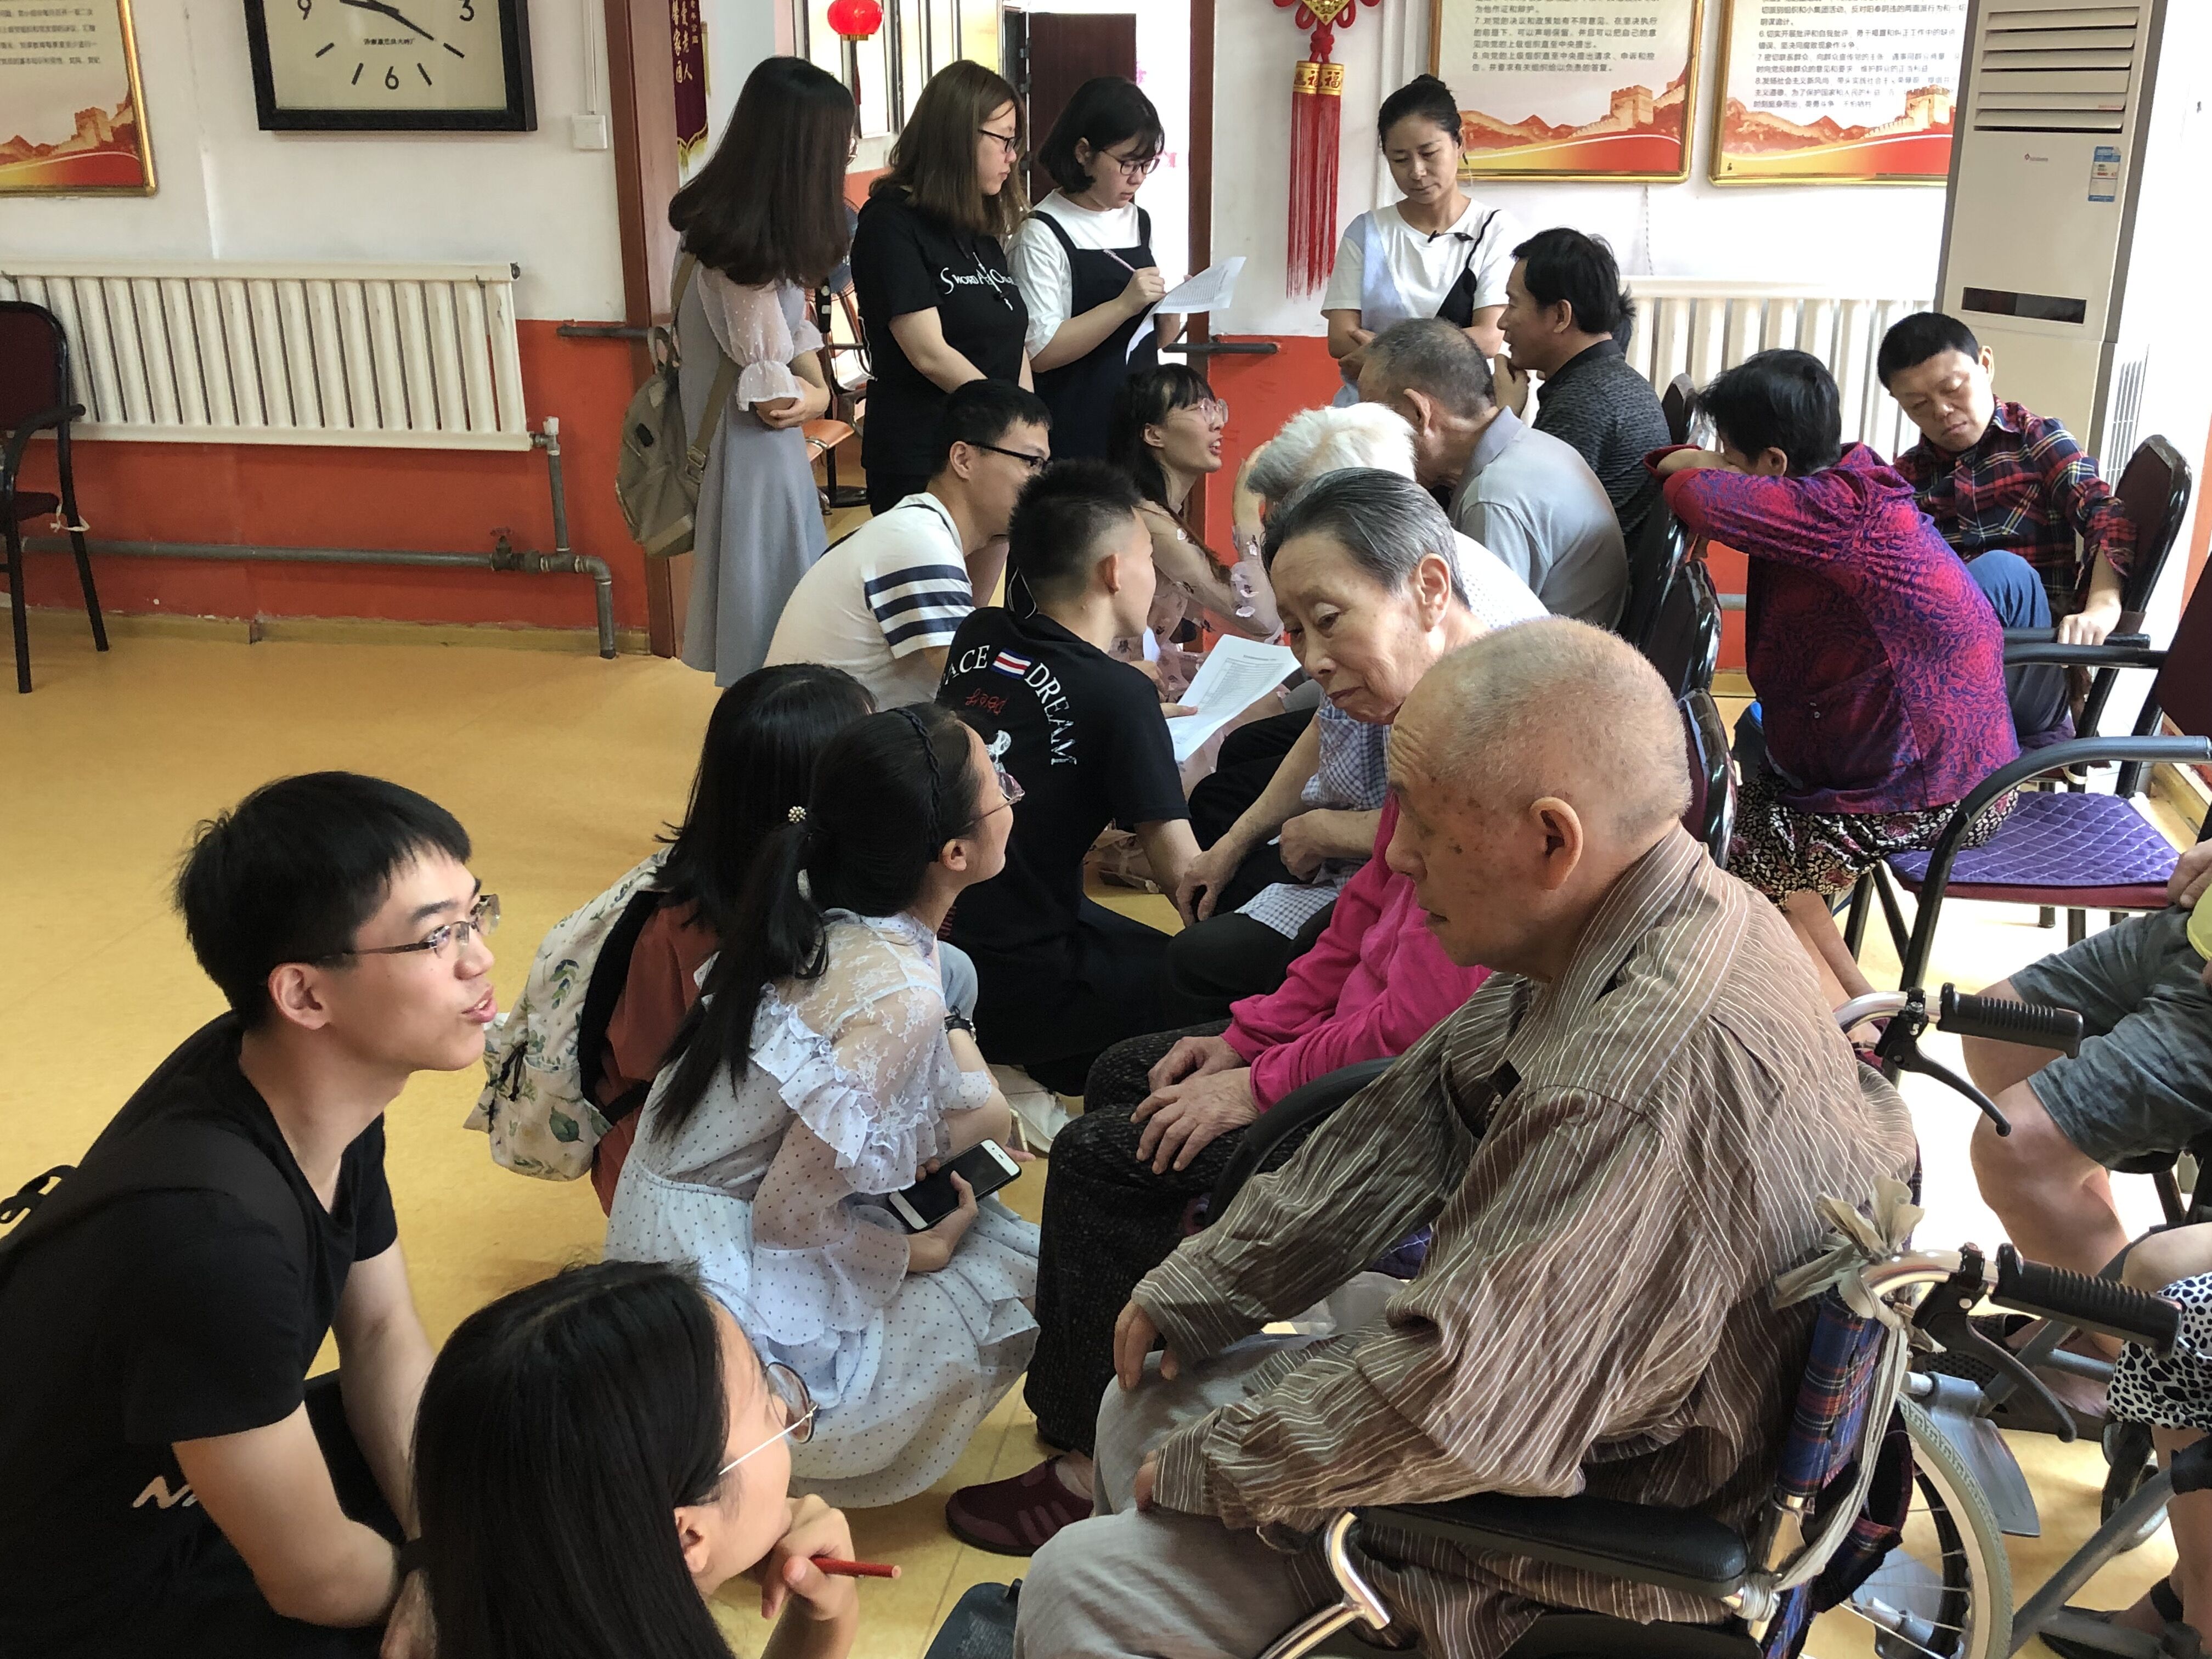 陪同老伴，一起入住 - 国寿社区养老 - 国寿社区健康养老管理深圳有限公司